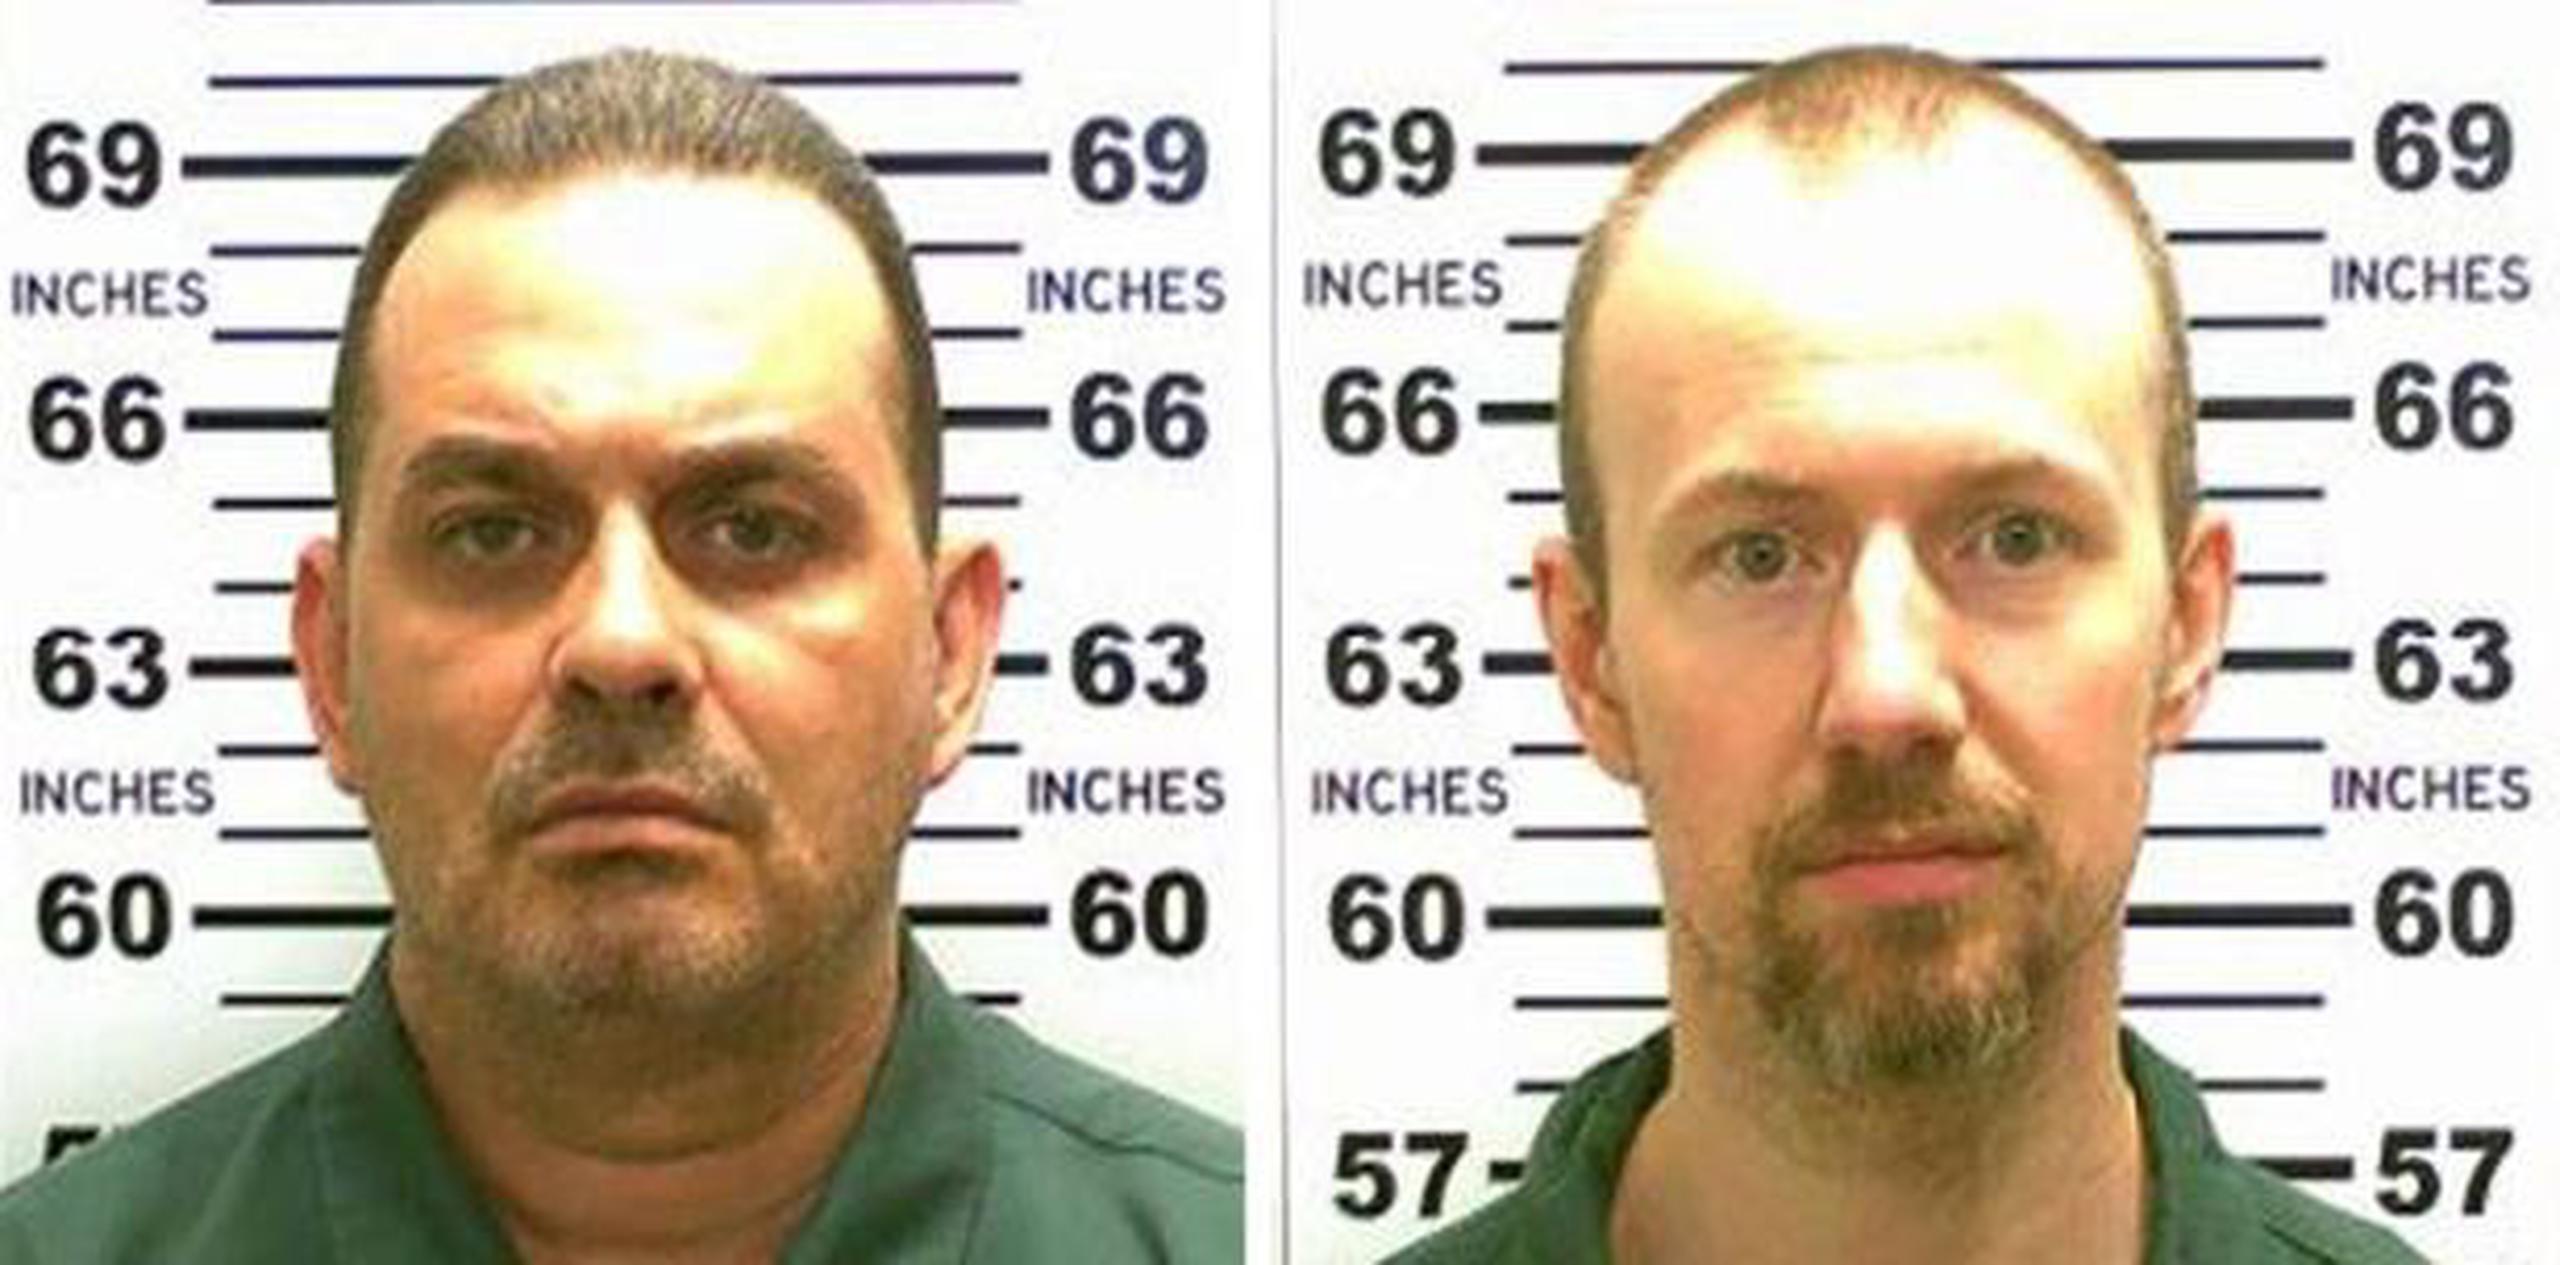 Matt y Sweat escaparon el 6 de junio de la prisión de máxima seguridad cerca de la frontera canadiense. (AP)